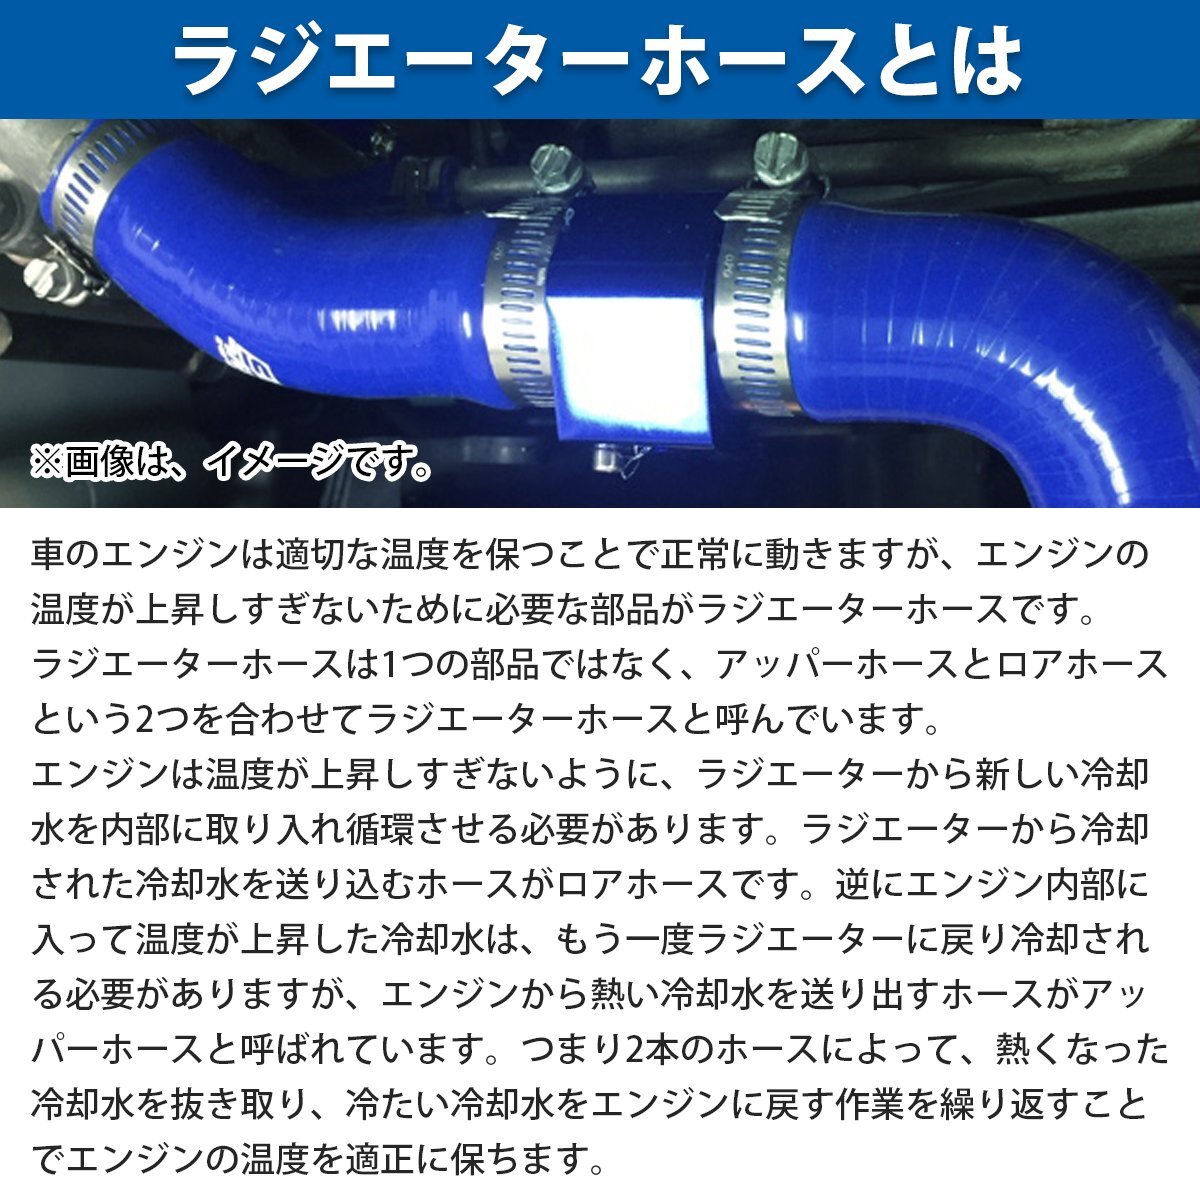 【新品即納】 トヨタ AE86 ハチロク トレノ ラジエーターホース 2P ブルー 耐熱 耐久 4層シリコンホース ラジエター アッパー ロア ホース_画像3